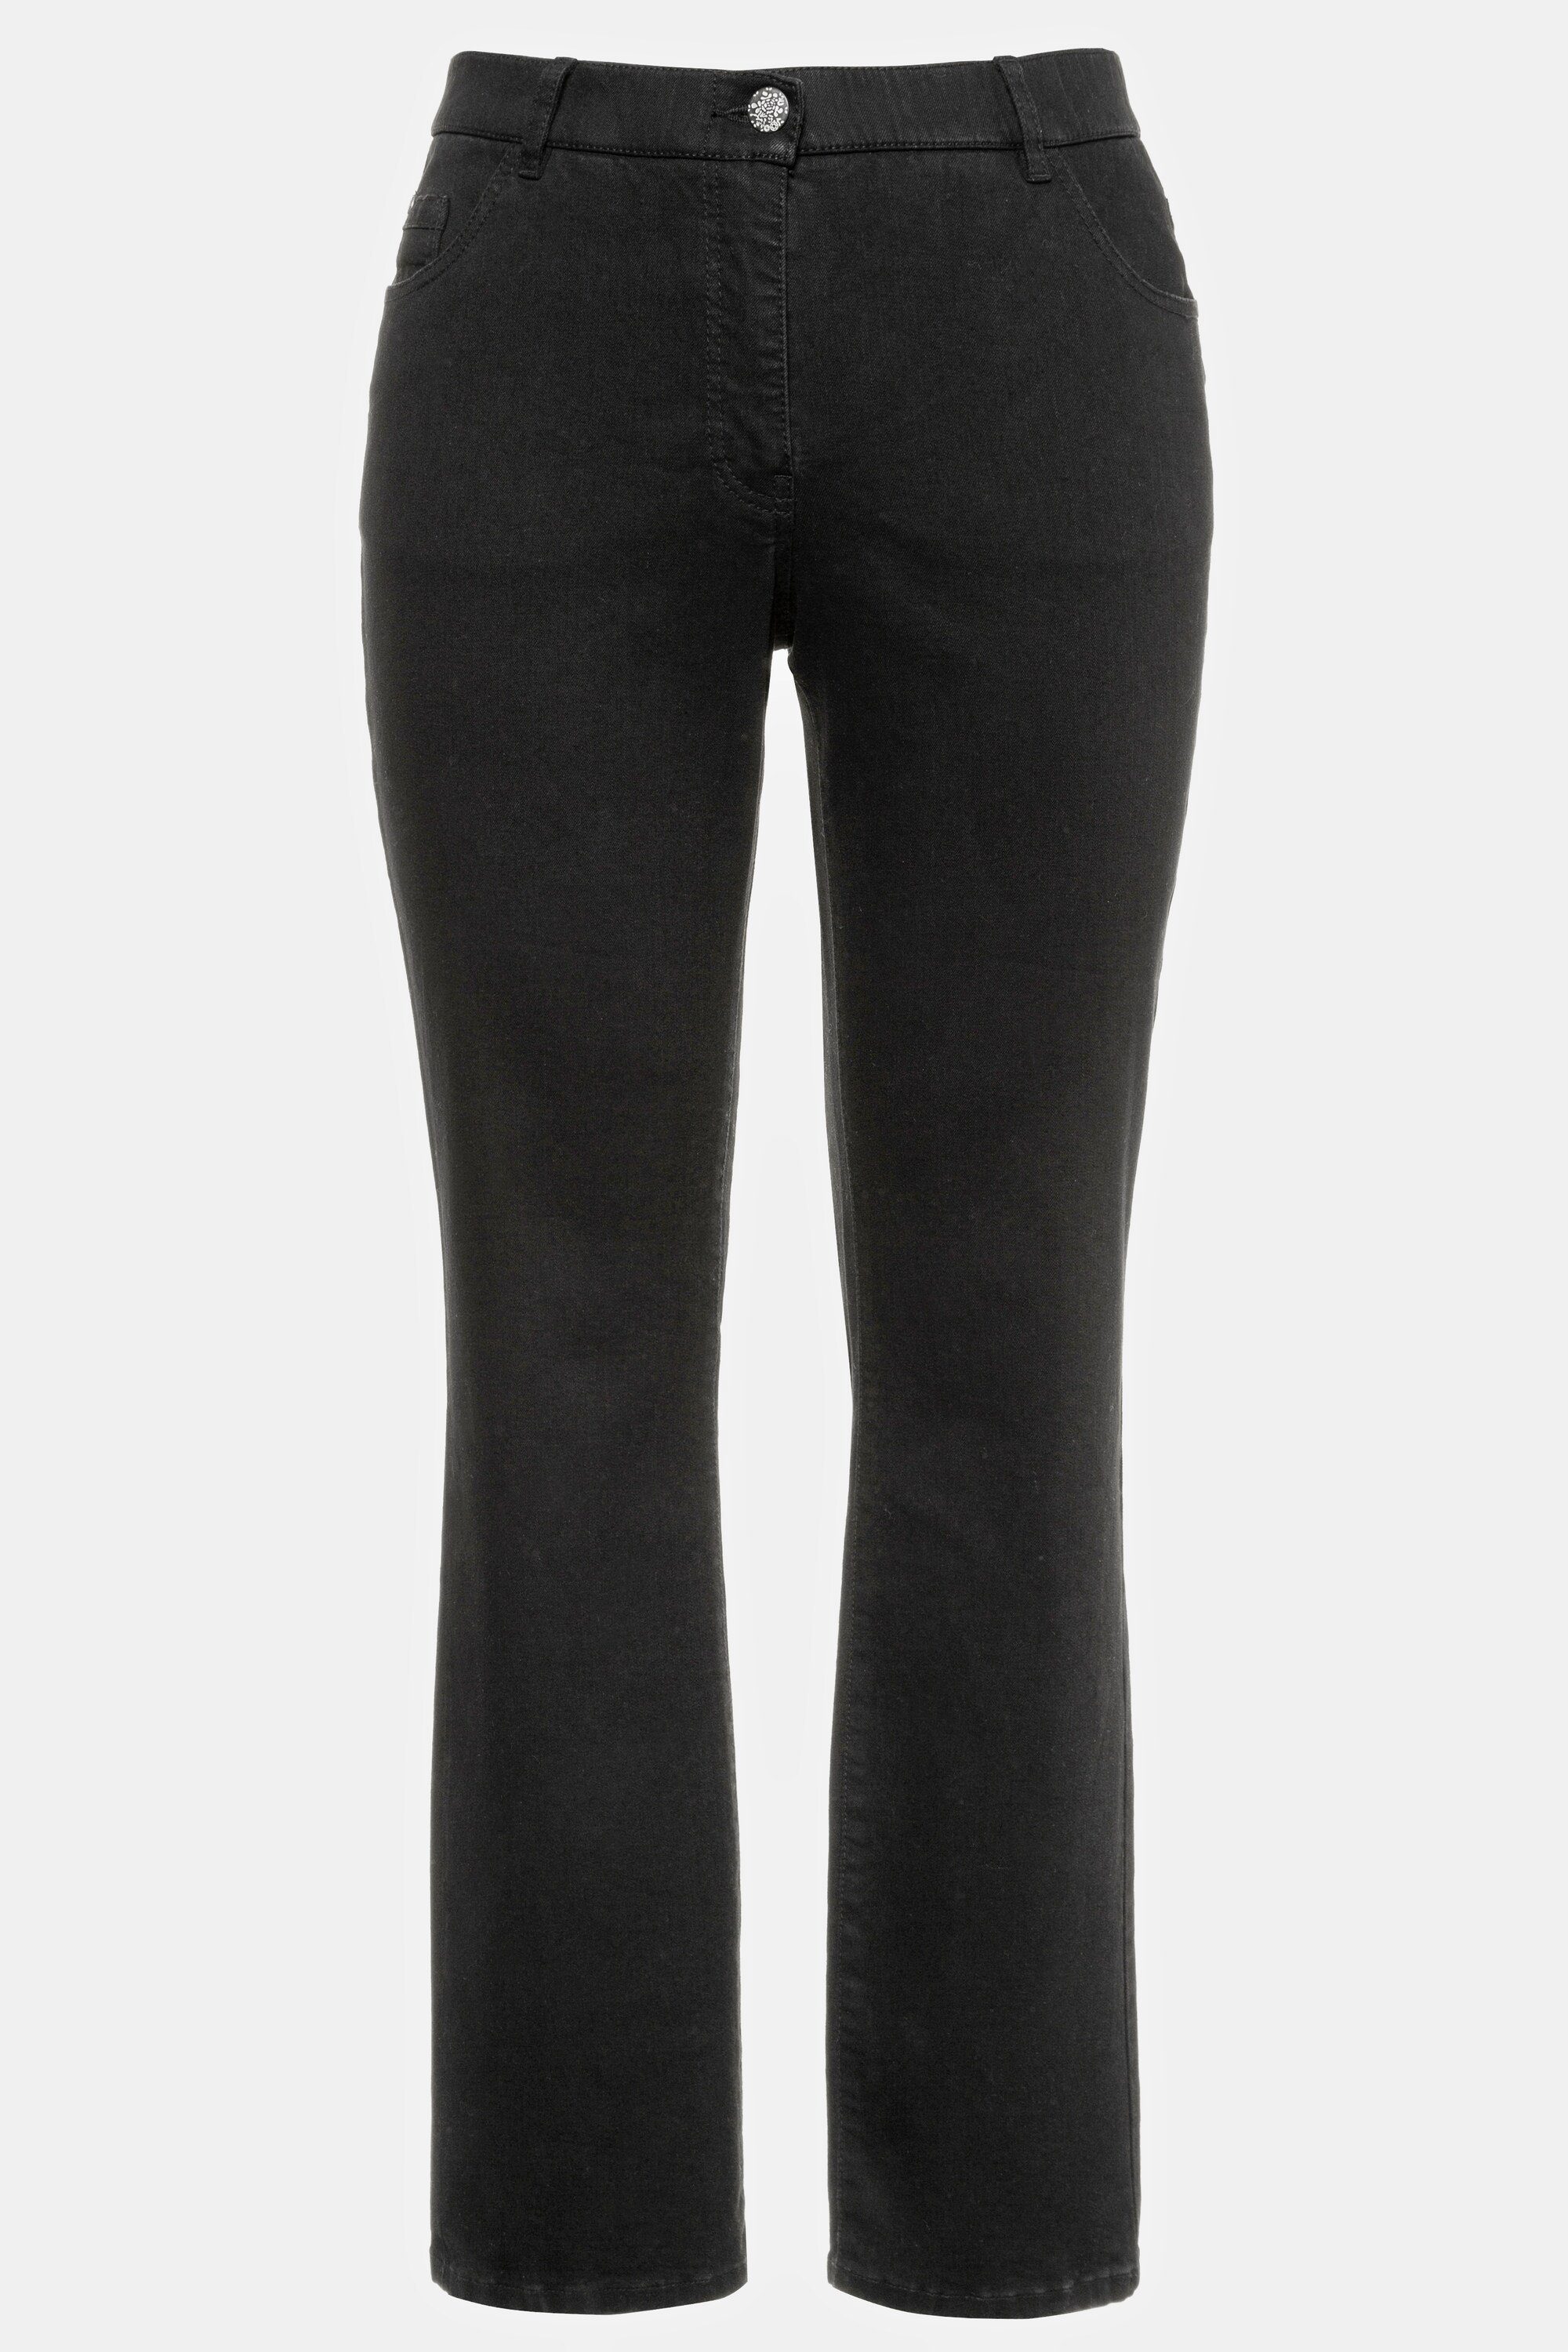 Funktionshose Komfortbund Ulla Mandy gerade 5-Pocket-Form Jeans black Popken